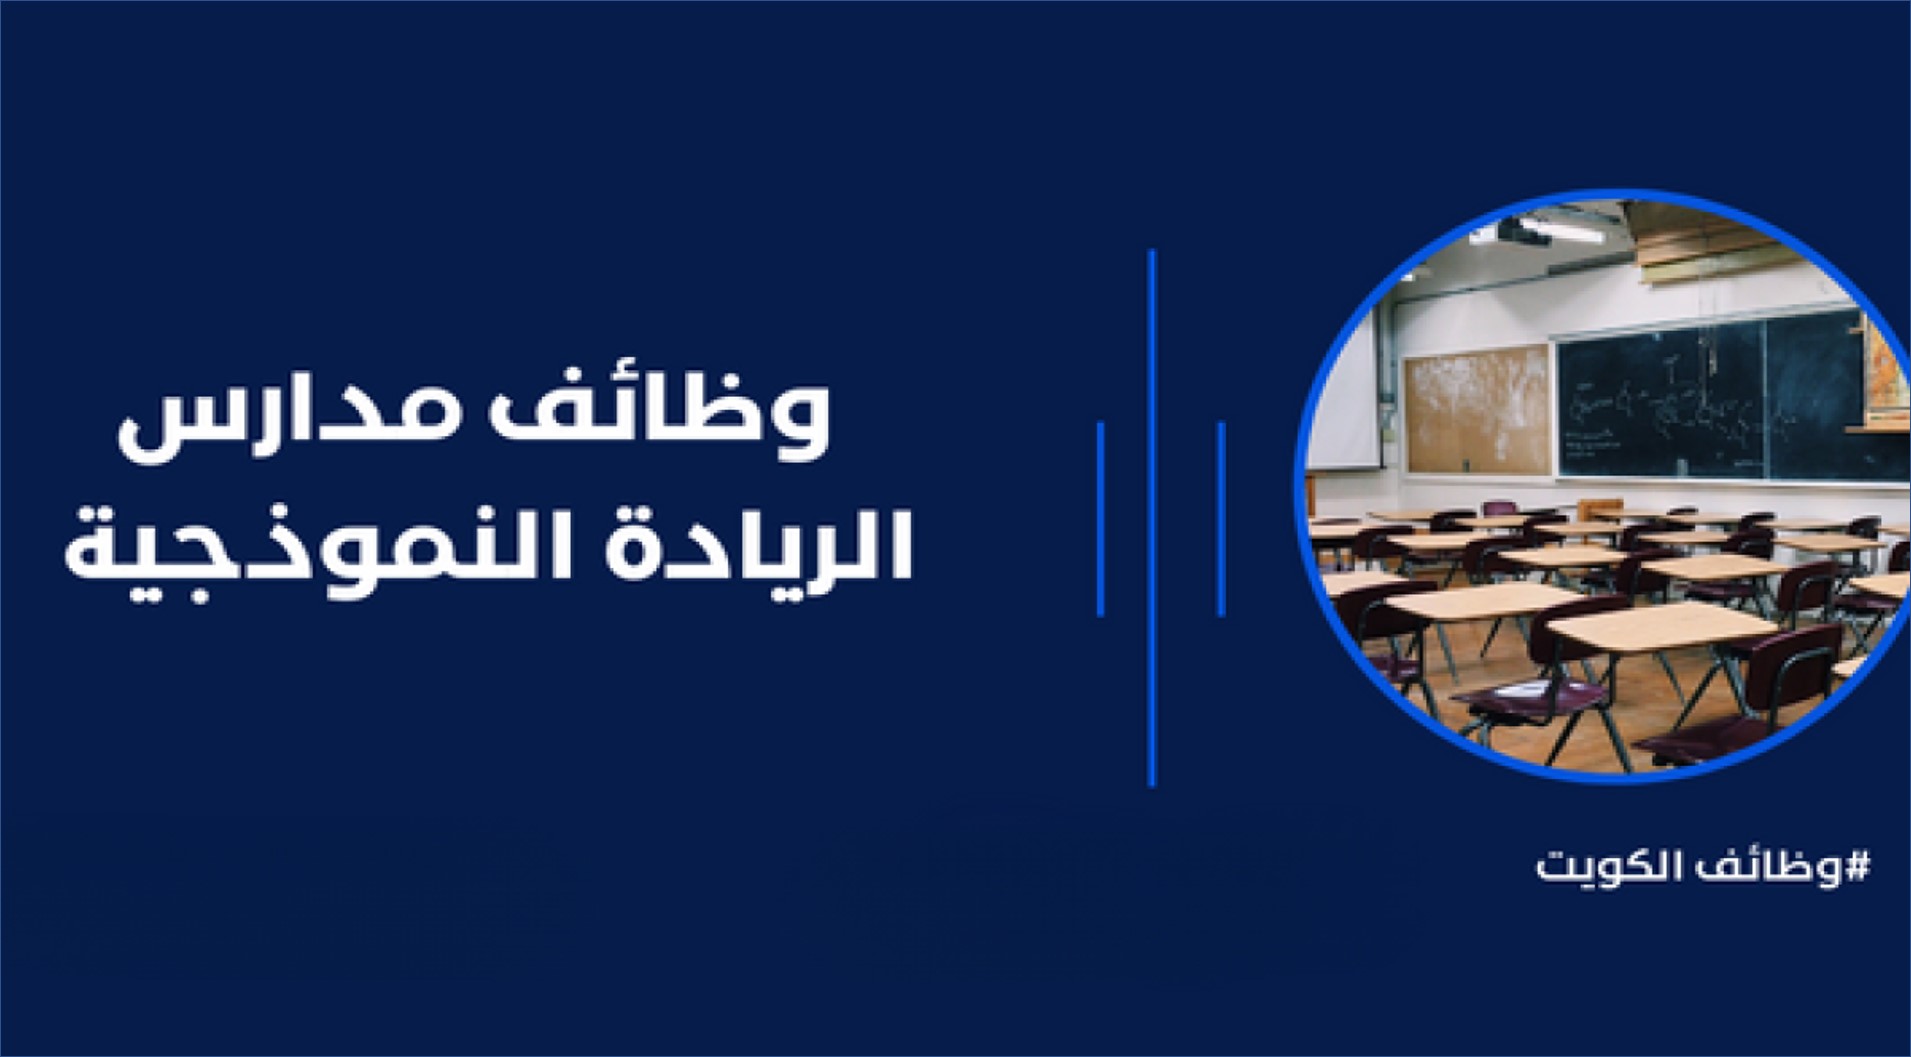 مدارس الريادة النموذجية بالكويت تعلن عن وظائف تعليمية وادارية